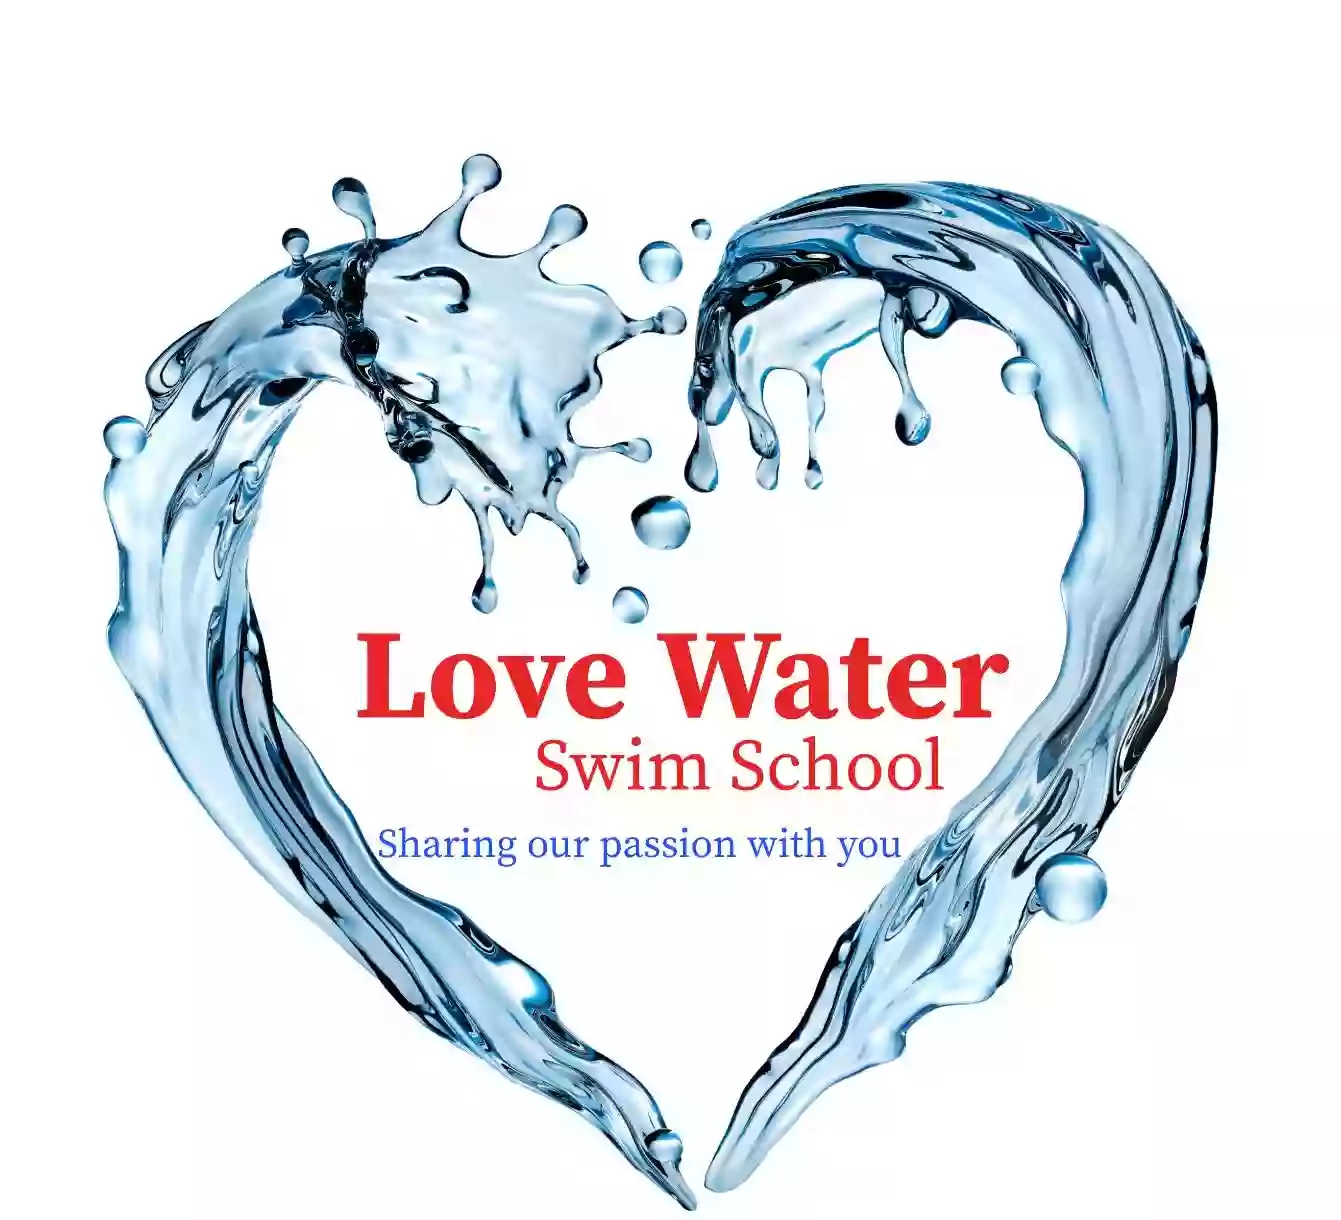 Love Water Swim School, Barnet